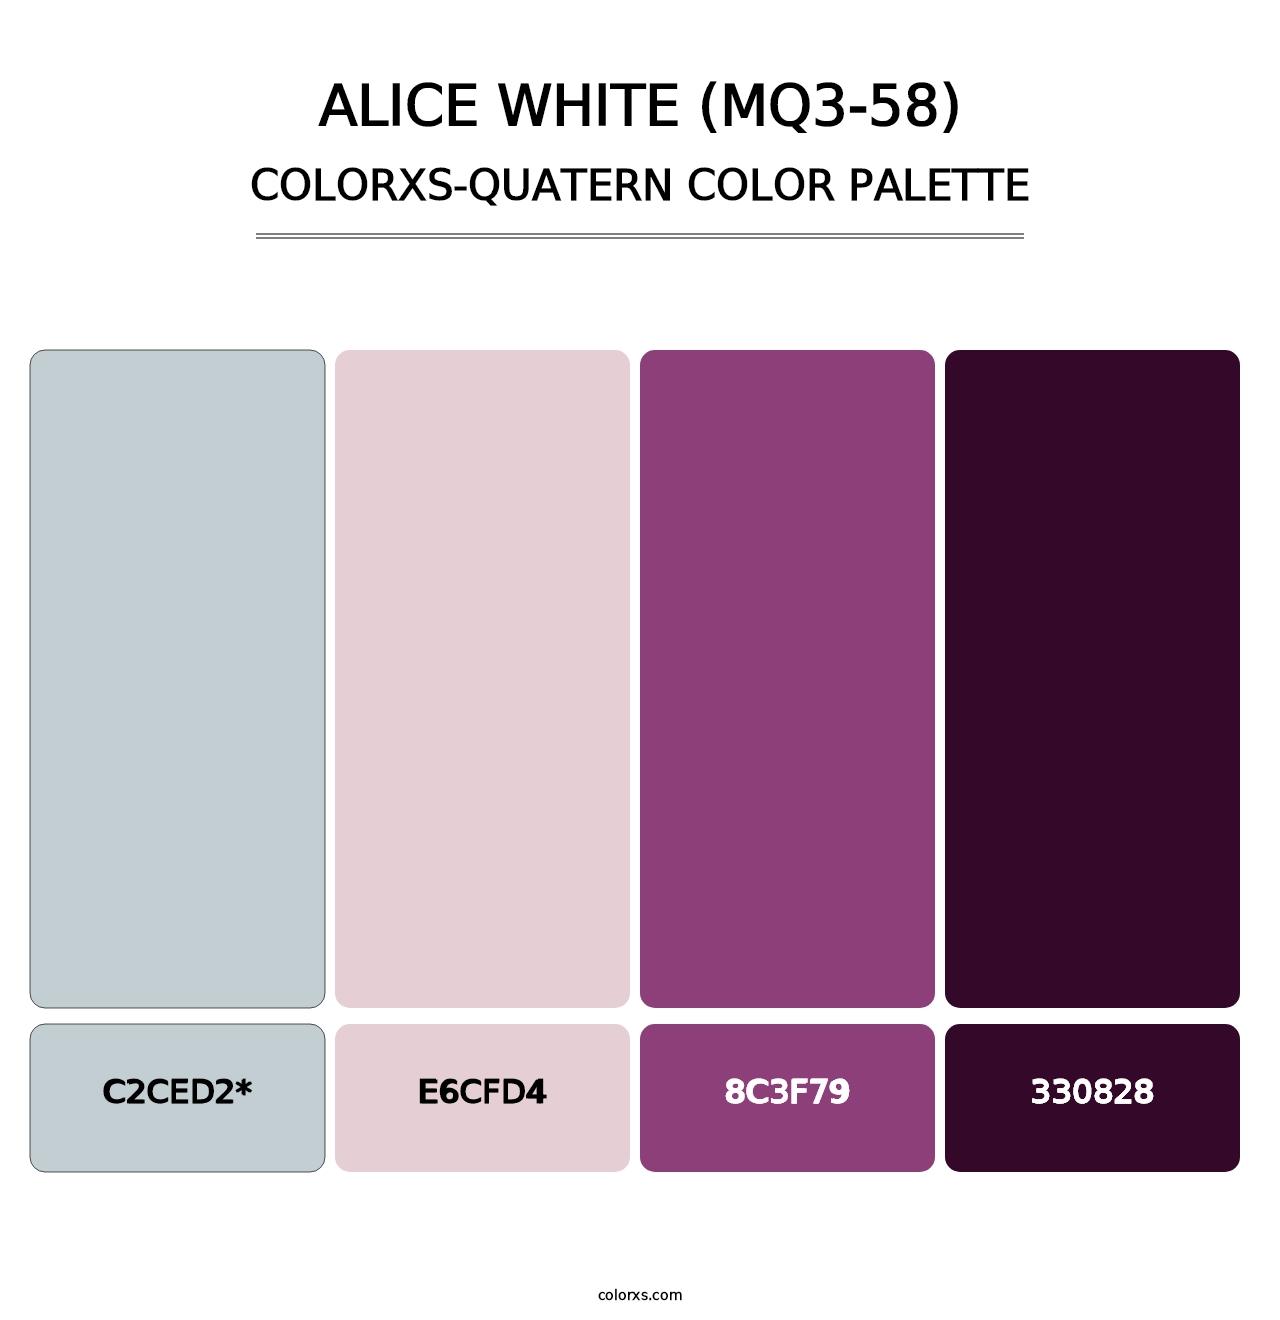 Alice White (MQ3-58) - Colorxs Quad Palette